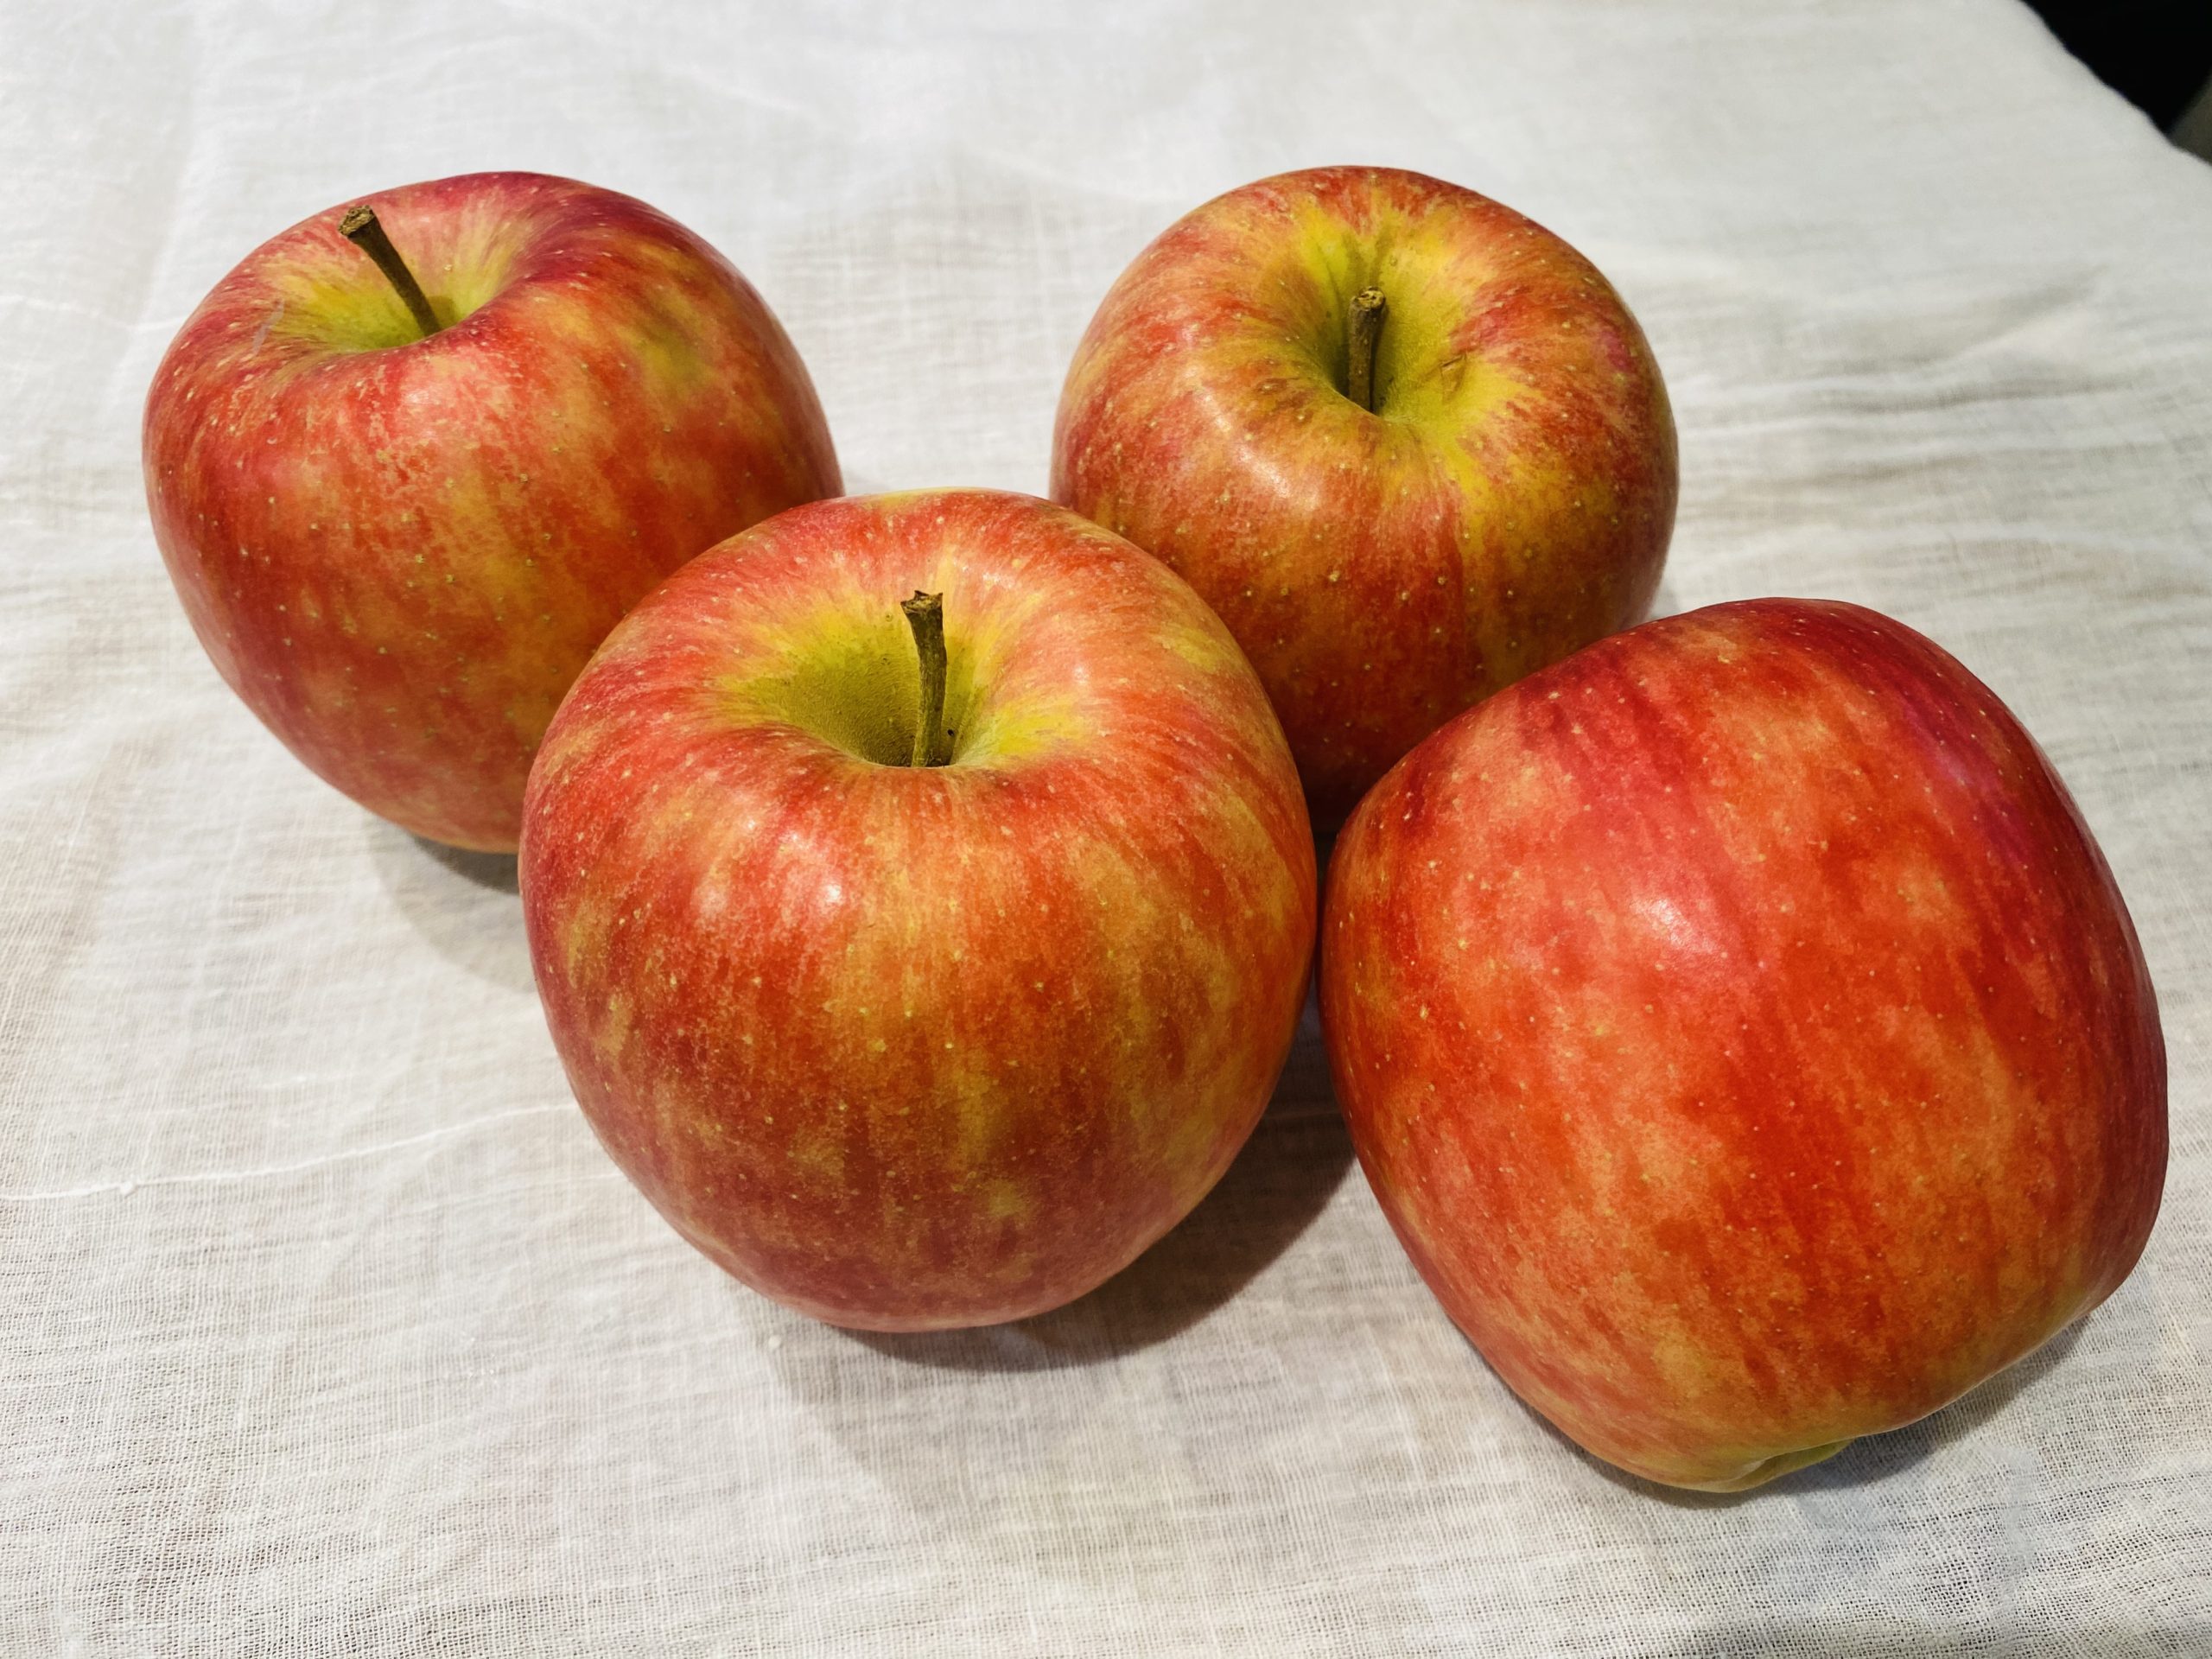 アップルパイやタルトタタンなど、りんごが使われたスイーツは沢山ありますよね！身近な果物として親しまれている「りんご」はいつでも手に入りますが、旬である10月〜12月頃が一番美味しく食べられます。もう過ぎてしまいましたが、11月5日は「いいりんごの日」なのです！これは、11月5日という日付が「いい(11)りんご(5)」という語呂合わせであることが由来なんだそうです。「毎日のりんご一個は医者の費用を節約できる」ということわざや「1日1個のりんごは医者いらず」ということわざはご存知でしょうか？この言葉はスペインやイギリスで生まれたことわざであるとされていますが、それほどりんごには健康に効果的な栄養素が豊富に含まれているということなのです！では、りんごの栄養素について、少し詳しく見ていきましょう♪りんご由来のポリフェノールである「りんごポリフェノール」はさまざまな成分が含まれています。その中でも約60%を占めているのが「プロシアニジン」です。りんごを切ると、切り口が茶色く変色することがありますが、これはポリフェノールが多く含まれているからなのです。果肉が酸化しないよう、プロシアニジンが果肉を保護することで変色します。プロシアニジンは強い抗酸化作用があり、余分な活性酸素を取り除く力が強く、劣化を遅らせる働きがあるので、シワやシミの予防にも効果が期待できます。また、コレステロール値を下げて血流を改善する効果もあると言われています！プロシアニジンは全ての品種に含まれていますが、その中でも「ふじ」や「王林」などの品種には、やや多く含まれているようです！更に、腸に良い働きが期待できる食物繊維の一種である「ペクチン」も多く含まれています。りんごに含まれているペクチンは水溶性の食物繊維で、善玉菌を増やして悪玉菌を減らす働きがあるため、便秘解消に効果が期待できます。りんごポリフェノールの同様に、抗酸化作用も期待できます。更に、コレステロールを包んで排出する働きもあるため、血液をサラサラにして動脈硬化を予防する効果もあると言われる優れものなのです。お肉や卵などコレステロールの高いものを食べた時は、食後にりんごを食べるのも良いですね！りんごポリフェノールやペクチンは、りんごの皮の部分多く含まれています。栄養素を効率よく摂取するには、皮をむかずにそのまま食べることが一番効果的です。ただ、皮の部分には農薬が残っている可能性もあるので、子供が食べる場合には十分注意が必要です！ペクチンは煮ても焼いても働くので、焼きりんごやコンポートにして食べるのもオススメです♪りんごの名前がつく栄養素として「リンゴ酸」がありますが、これはりんごと関係しているのでしょうか…？実は、リンゴ酸は初めてりんごから発見されたので、リンゴ酸という名前になったようです。やはり、りんごとは関係があったのですね！リンゴ酸はりんごをはじめ、果実や野菜などに含まれる有機酸の1つです。これには、食事をエネルギーに変換する｢クエン酸回路｣を活発にさせる働きがあるので、疲労回復効果が期待できます。運動後の補食としても良いですね！美味しいりんごといえば、蜜がたっぷりと入ったものを思い浮かべる方も多いのではないでしょうか？りんごの蜜の正体は「ソルビトール」という糖アルコールの一種なのです。葉で作られたデンプンを果実に送るために、水に溶けやすい糖アルコールに変えて果実へ届けられます。それがソルビトールなのです。しかし、ソルビトール自体は砂糖と比べると5割ほどの甘さなので、それほど甘くはありません。ソルビトールは果実の中でりんごの甘味となる果糖やショ糖に変換されます。 そして、りんごが完熟すると、ソルビトールは糖分に変換するのをやめてしまい、そのままの状態で蓄積されます。これがりんごの「蜜」の正体となります！蜜入りのりんごが美味しいと言われるのは、完熟した状態で収穫されるからなのです。 蜜入りのりんごができるポイントは、品種と収穫時期にあり、蜜が入りやすいものとそうではないものに分かれます。蜜の入りやすい品種としては「ふじ」「北斗」「レッドゴールド」などがあります。一方、「王林」や「ジョナゴールド」などは完熟しても蜜が入りません。蜜入りのりんごはもちろん美味しいですが、品種によっては、糖度が高くて美味しいものでも蜜が入っていないものもあります。蜜が入っているりんご＝甘くて美味しいりんご　というわけではないのです！りんごは美味しいだけでなく、他の果物の成熟を促す働きもあります！これはりんごが発する「エチレンガス」によるもので、エチレンガスは別名、成熟ホルモンとも呼ばれます。りんごは果物の中でもエチレンガスをたくさん発生させるので、りんごと同じビニール袋に熟していない果物を入れて保存しておくと、早く食べ頃を迎えることができます！りんご以外にも、メロン、柿、桃などは、エチレンの発生量が多いので、まだ青いバナナや、かたいキウイフルーツなどと一緒に袋に入れておくと、追熟が進みます。ケーキを冷蔵保存する場合も、カットしたりんごをケーキの箱に入れておくと、翌日もケーキはパサつかずにしっとり食べられるそうです。なんと日本では、約2000種類ものりんごが栽培されています！赤、青、黄色と色もカラフルで様々な種類のりんごがありますが、生でそのまま食べるなら、果汁が多く甘味のある「ふじ」がおすすめです。アップルパイなどお菓子作りに使うなら、水分が少なく煮崩れしにくい「紅玉」が最適です！品種によって食べ比べをするのも楽しそうですね！りんごはお菓子やサラダにはよく使われるので、今回はりんごとお肉を合わせたお料理をご紹介します♪【チキンのアップルソースソテー】<材料>(2人分)鶏もも肉…小2枚(約200g)りんご…１個レモン汁…少々固形スープの素…1/4個塩・こしょう…少々サラダ油…大さじ1/2砂糖…小さじ1/2水…1/3カップ<作り方>①鶏もも肉に塩・こしょうを少々をふる。②りんごは芯(しん)を除き、1/8のくし形に切る。③フライパンに油を熱し、鶏もも肉の皮を下にして弱火で約５分焼き、皮がカリッとしたら返す。④あいているところにりんごを入れて約10分焼く。⑤鶏もも肉に火が通ったらレモン汁をふる。⑥鶏もも肉とりんごを取り出して余分な脂を捨て、砂糖を加えて火にかける。⑦カラメル状になったらスープの素と水を加え、塩・こしょうを少々加え調味してソースを作る。⑧鶏もも肉とりんごを盛り、⑦のソースをかけて完成♪りんごは生で食べるのはもちろん、お料理やお菓子など様々な使い方ができます！りんごの健康パワーで、冬を乗り越えていきましょう！*:..｡o○☆*ﾟ¨ﾟﾟ･*:..｡o○☆*ﾟ¨ﾟﾟ･*:..｡o○☆･*:..｡o○☆*ﾟ¨ﾟﾟ･*:..｡o○☆*ﾟ¨ﾟﾟ･*:..｡o○住所：兵庫県芦屋市公光町4-20-303　　　株式会社然 （http://www.zenmarche.com/）http://fun-westjapan.com/【発行者】 fun実行委員会～栄養学生団体【fun】は、栄養士・管理栄養士養成コースの学生が社会や企業と コラボレーションしながら、社会で即戦力として通用する経験を積む場です。栄養士・管理栄養士を目指す大学生、専門学校生の就活にも有利です♪♪～･*:..｡o○☆*ﾟ¨ﾟﾟ･*:..｡o○☆*ﾟ¨ﾟﾟ･*:..｡o○☆･*:..｡o○☆*ﾟ¨ﾟﾟ･*:..｡o○☆*ﾟ¨ﾟﾟ･*:..｡